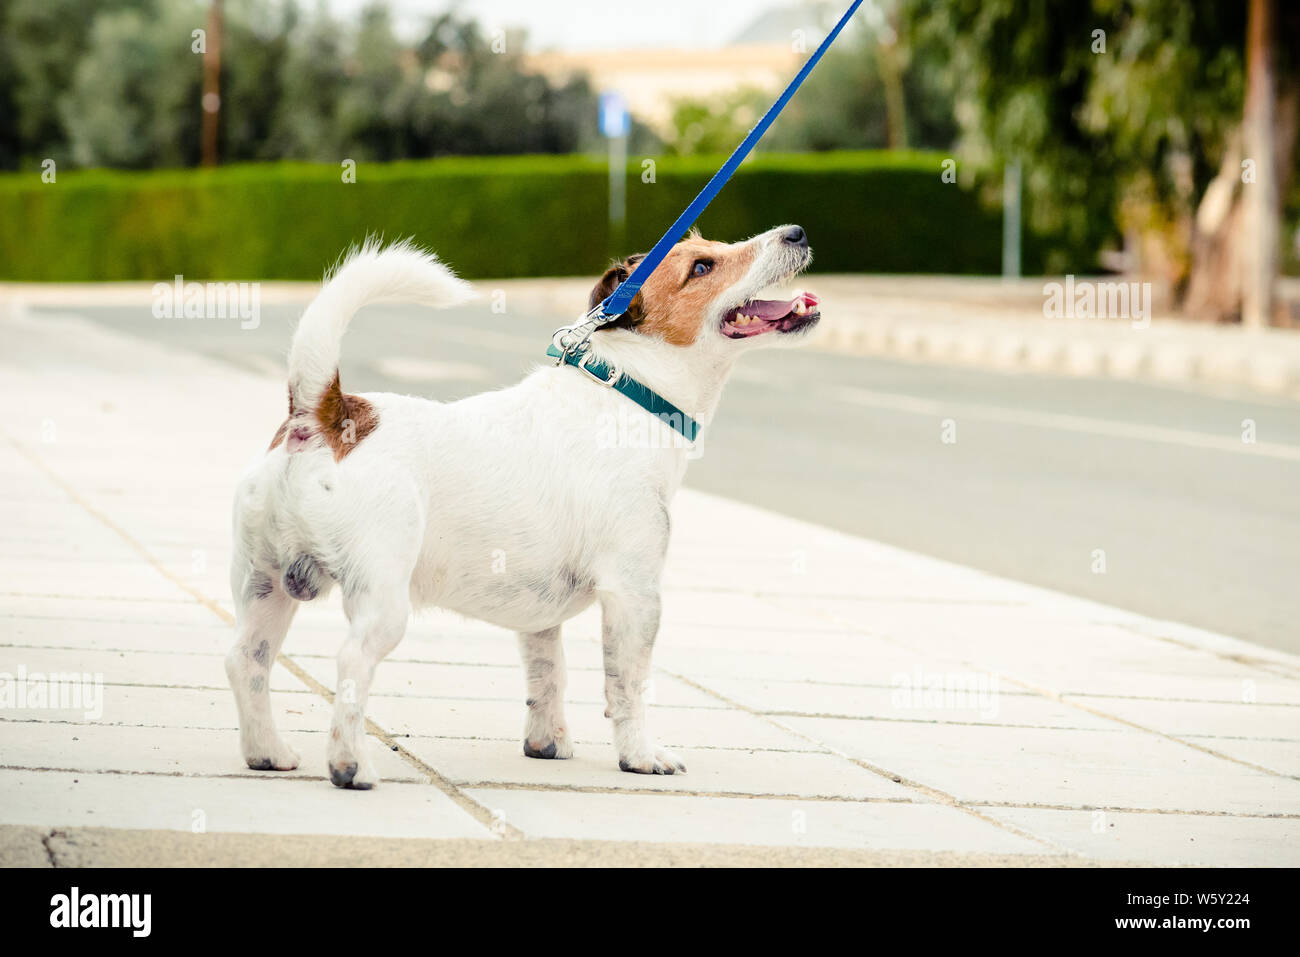 Promenade de chiens en laisse en face de petite ville du sud de l'Europe Banque D'Images